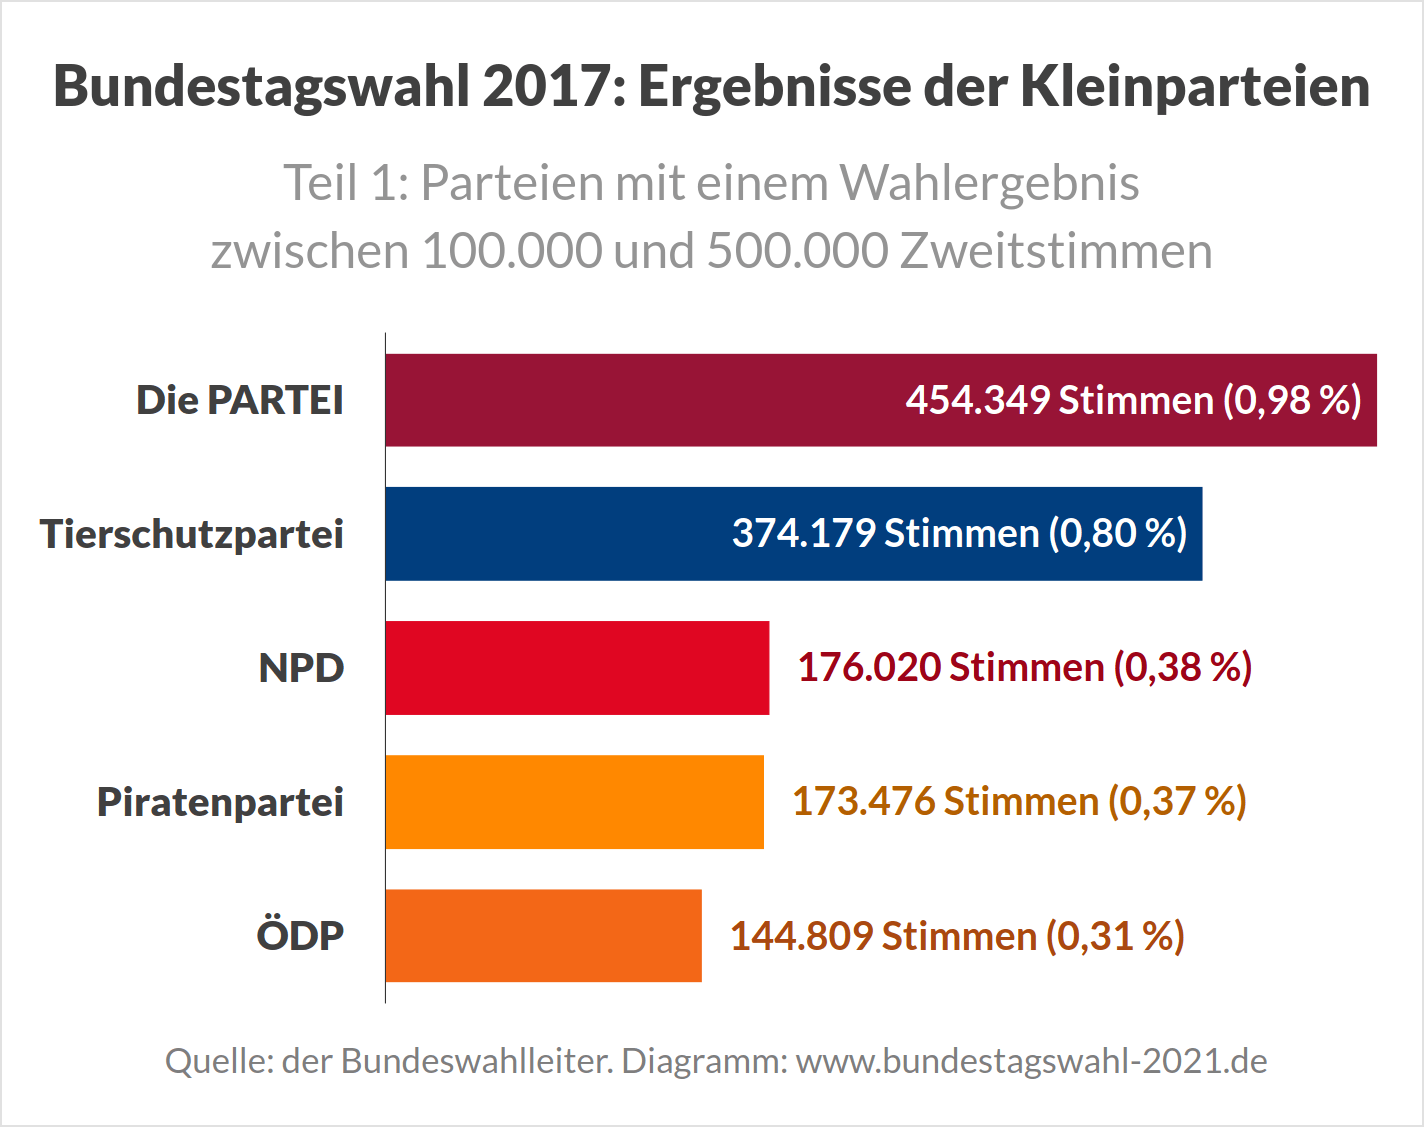 Ergebnisse der Kleinparteien bei Bundestagswahlen